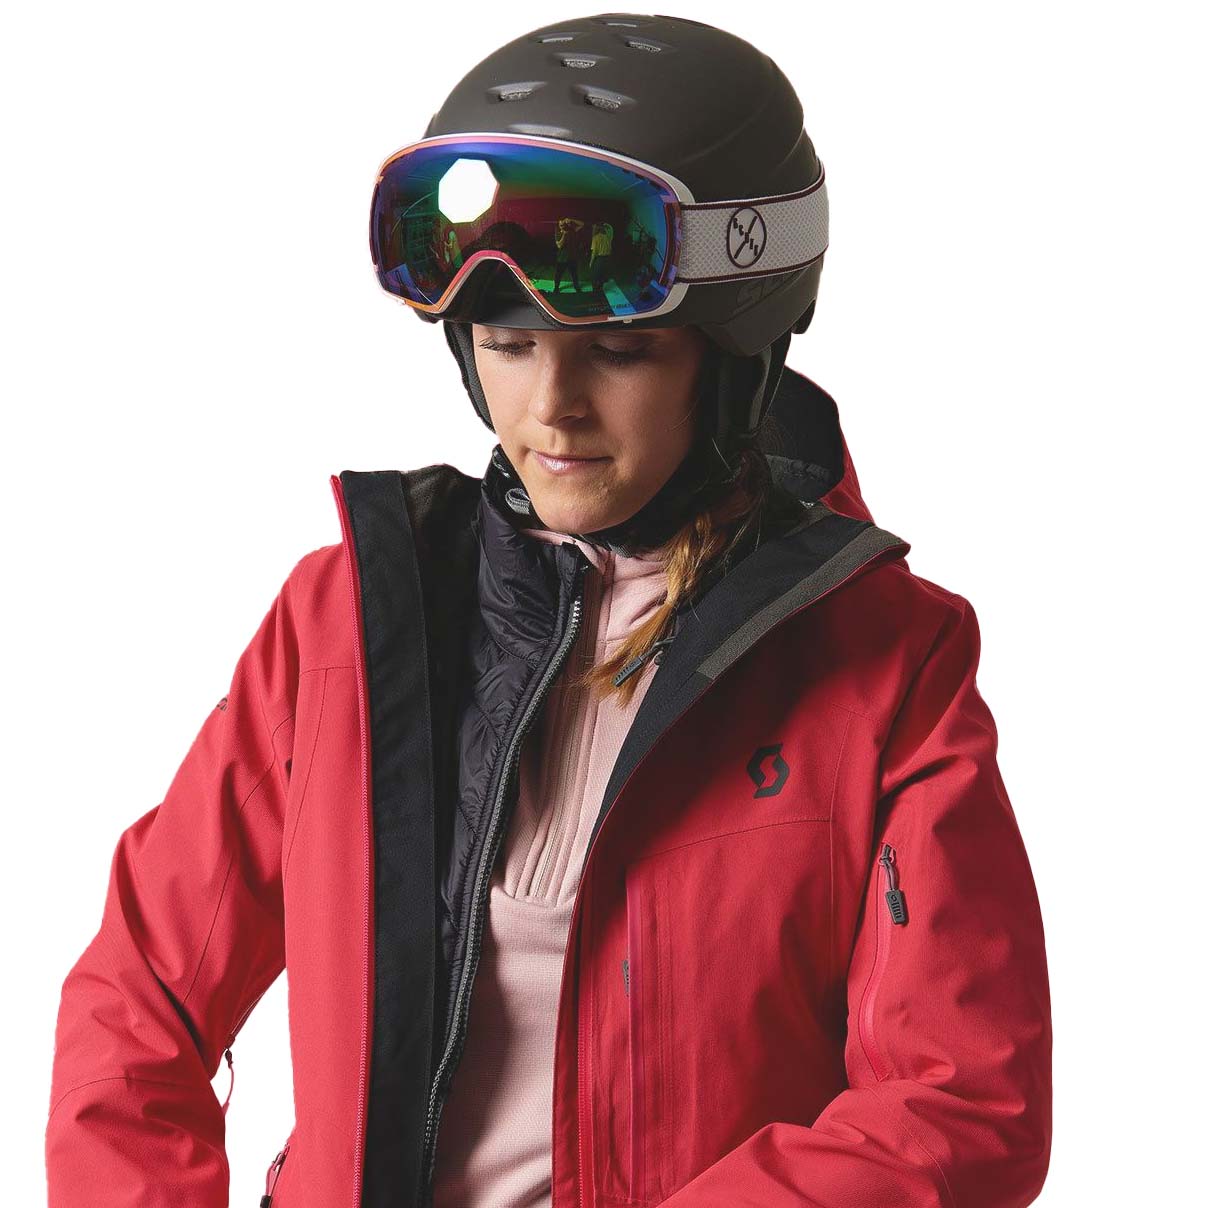 Scott Chase 2 Plus MIPS Ski/Snowboard Helmet